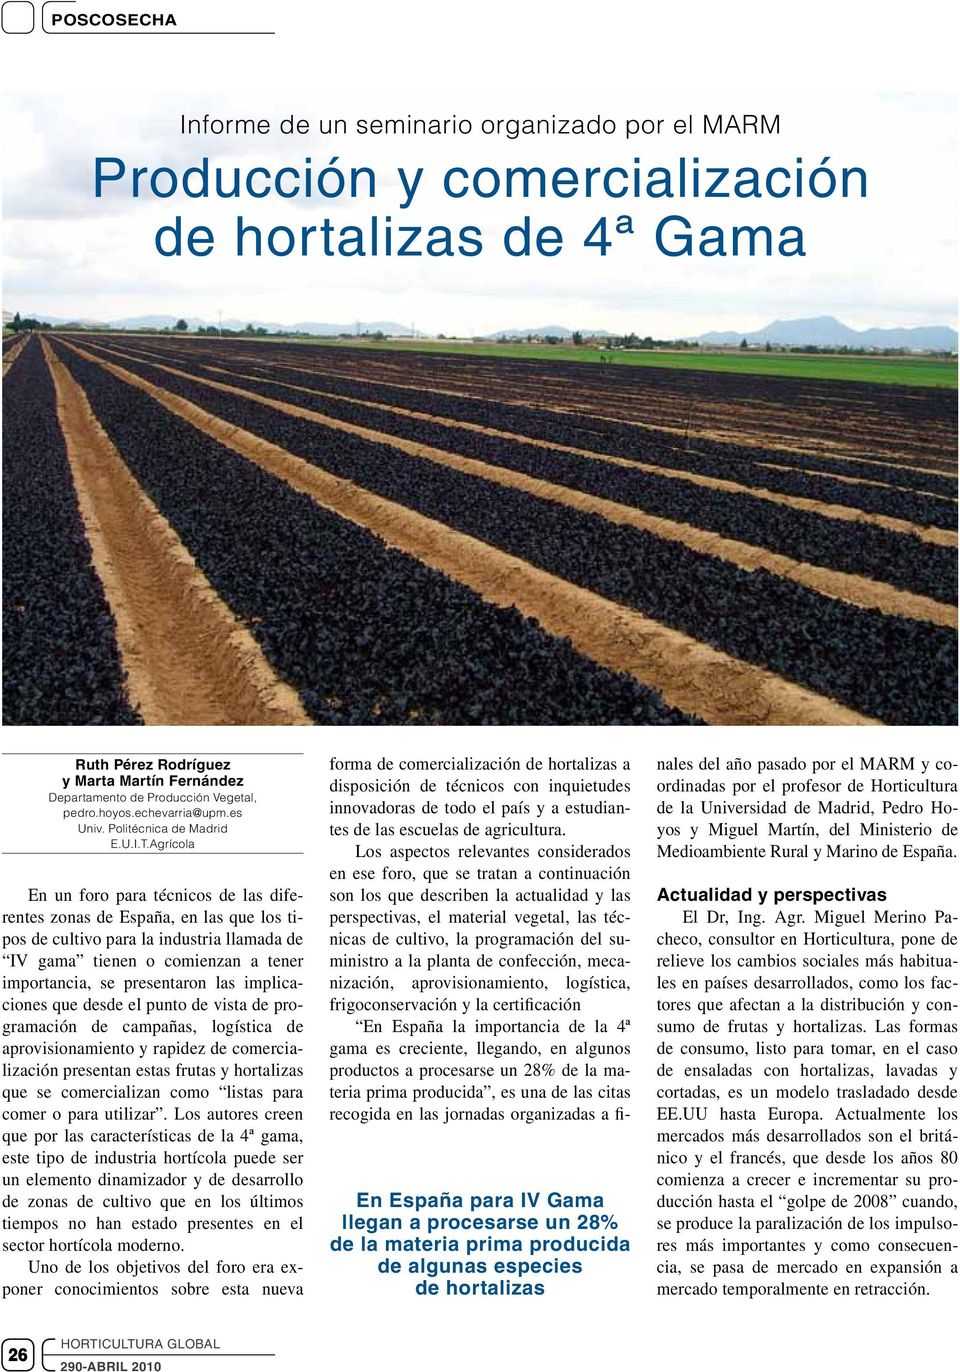 Agrícola En un foro para técnicos de las diferentes zonas de España, en las que los tipos de cultivo para la industria llamada de IV gama tienen o comienzan a tener importancia, se presentaron las